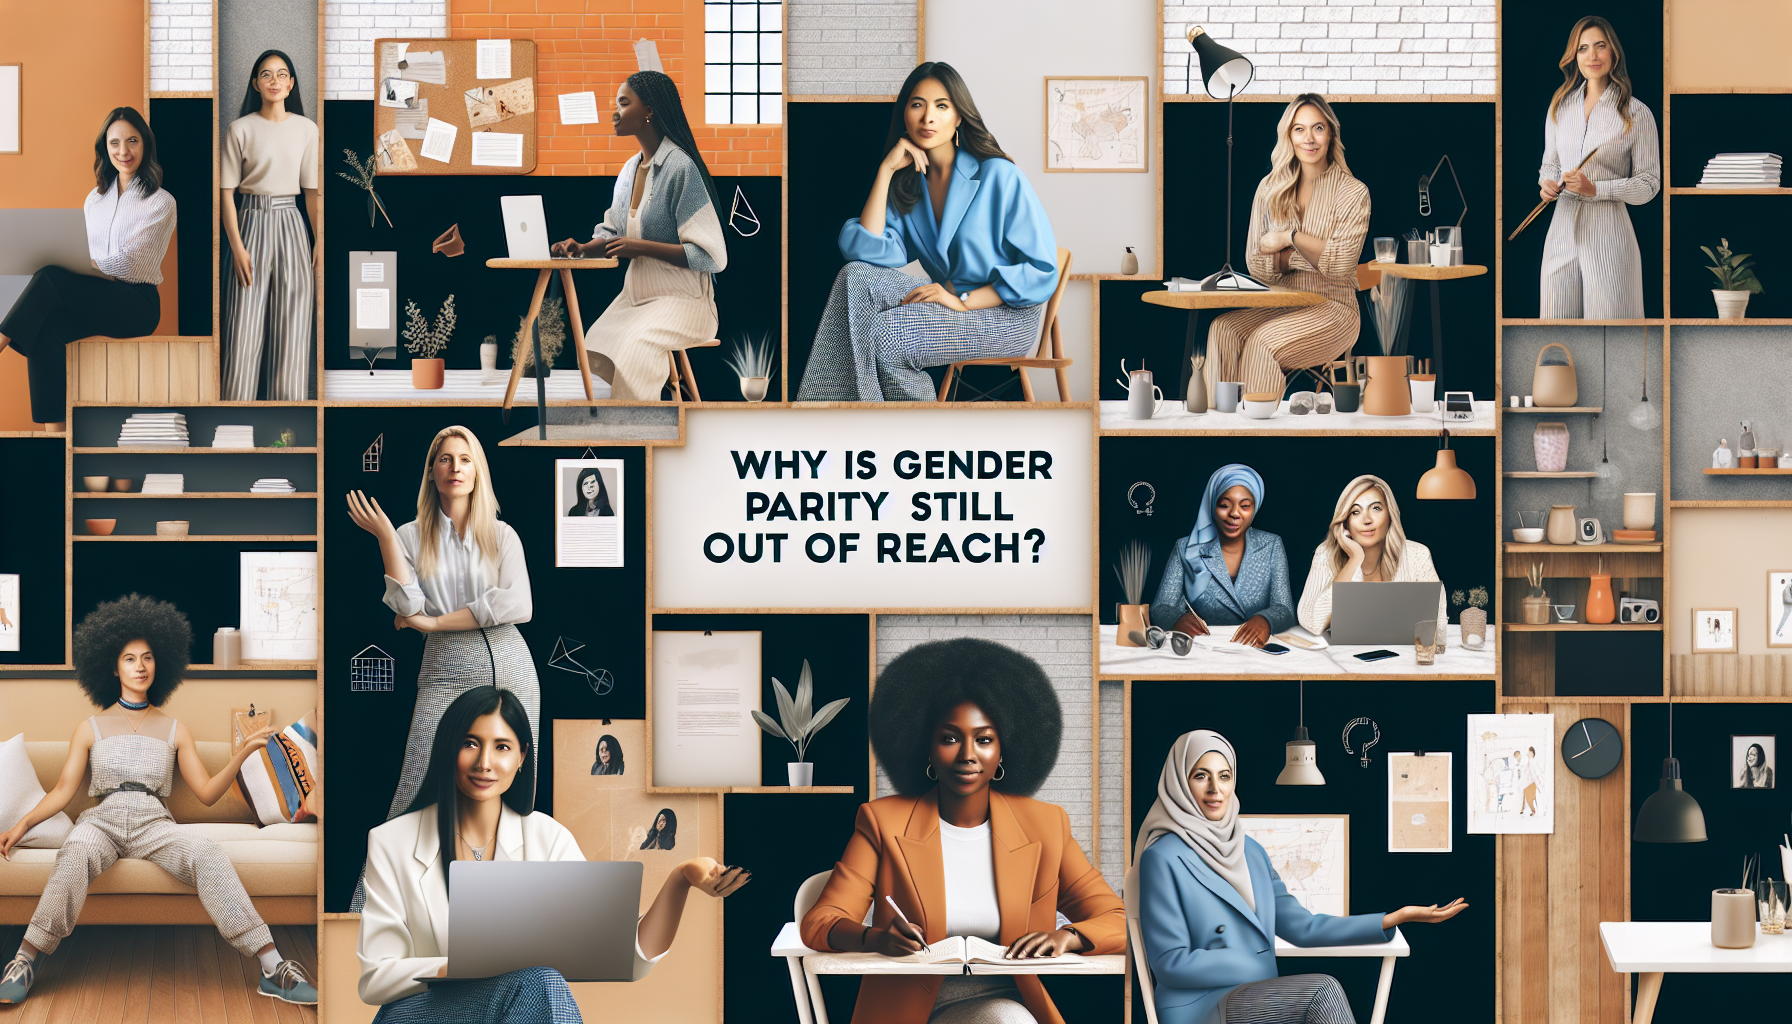 analyse de la difficulté à atteindre la parité pour les femmes entrepreneures et les obstacles rencontrés dans la société contemporaine.